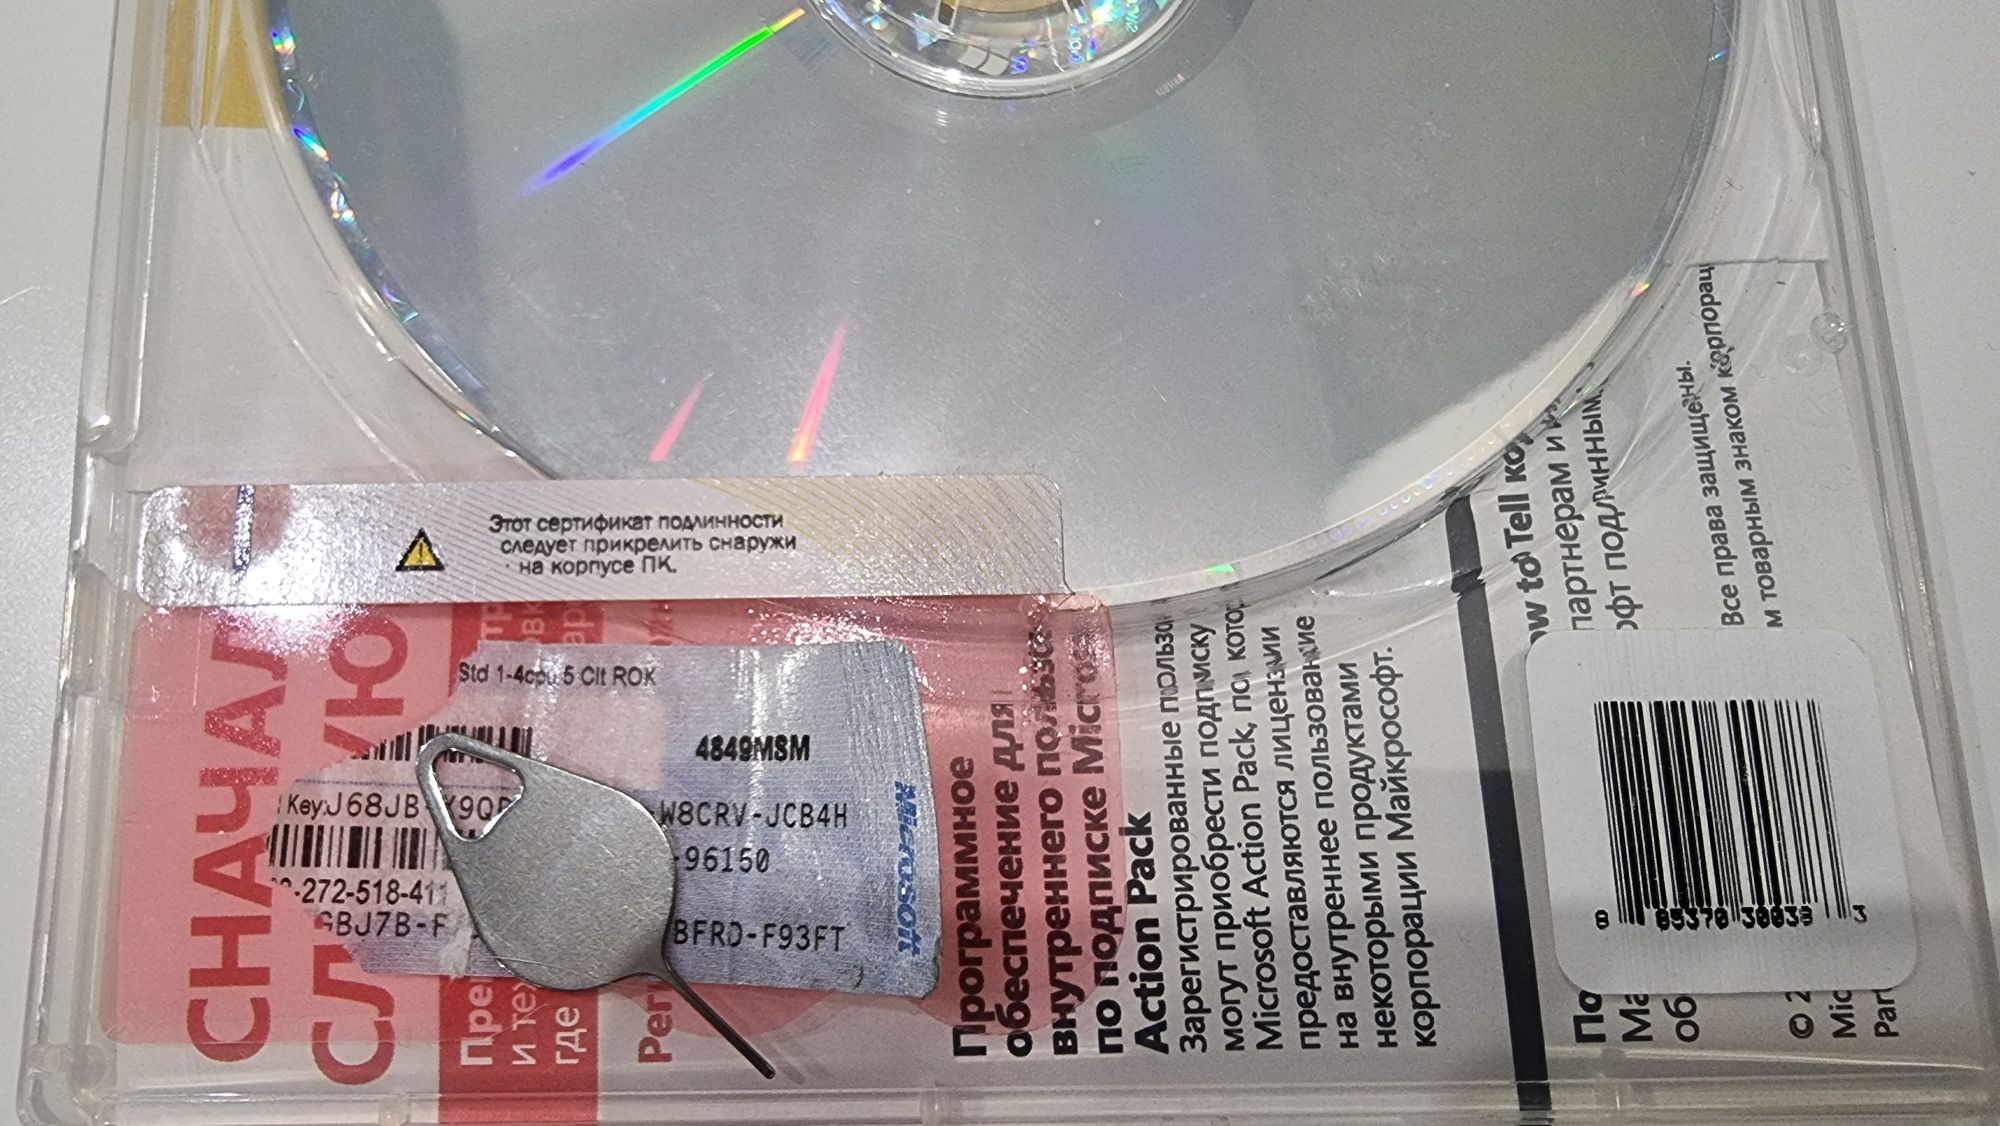 Лицензия Windows Server Standard 2008 наклейка с серийным номером+диск